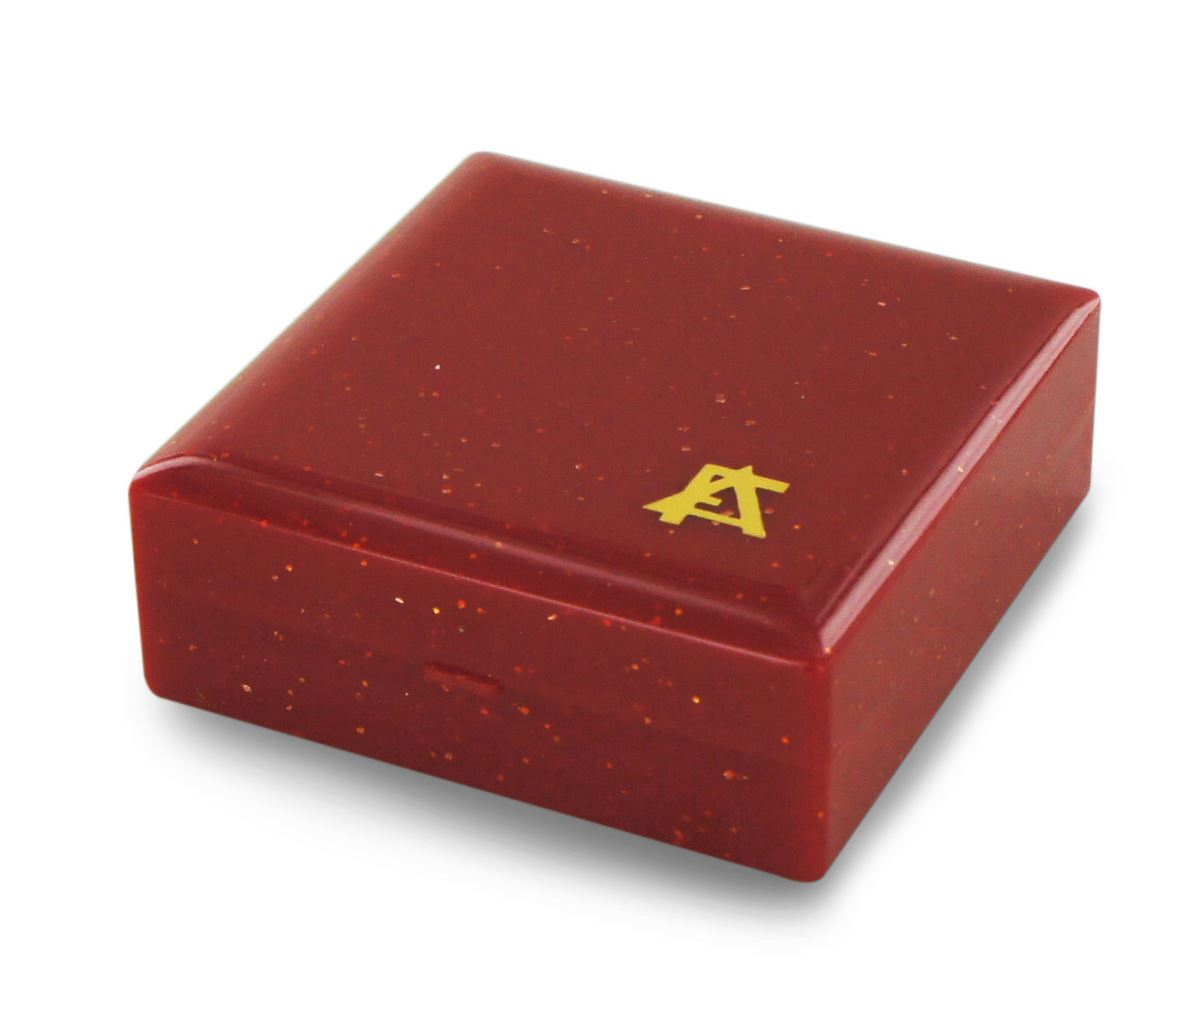  scatolina portarosario rossa - 5 x 5 cm